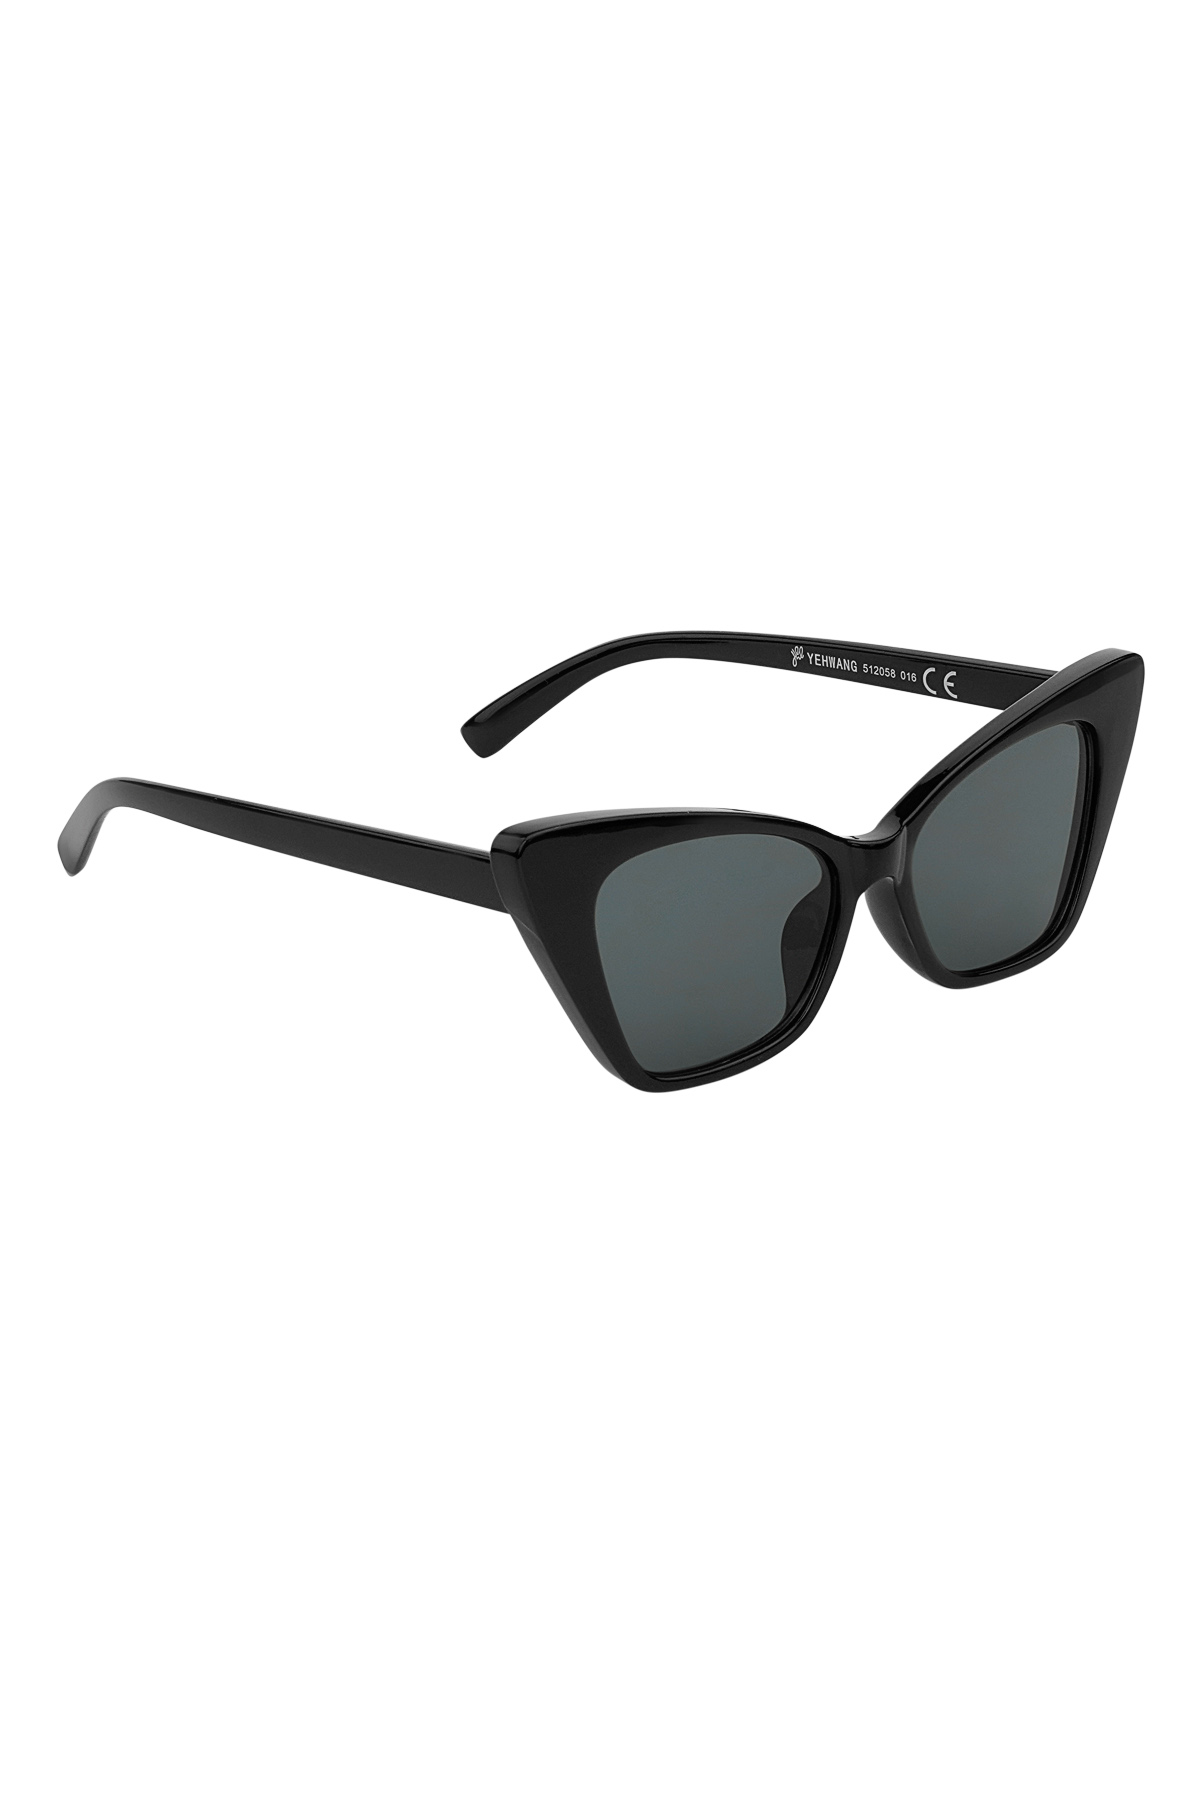 Sonnenbrille mit einfarbigem Rahmen – schwarz